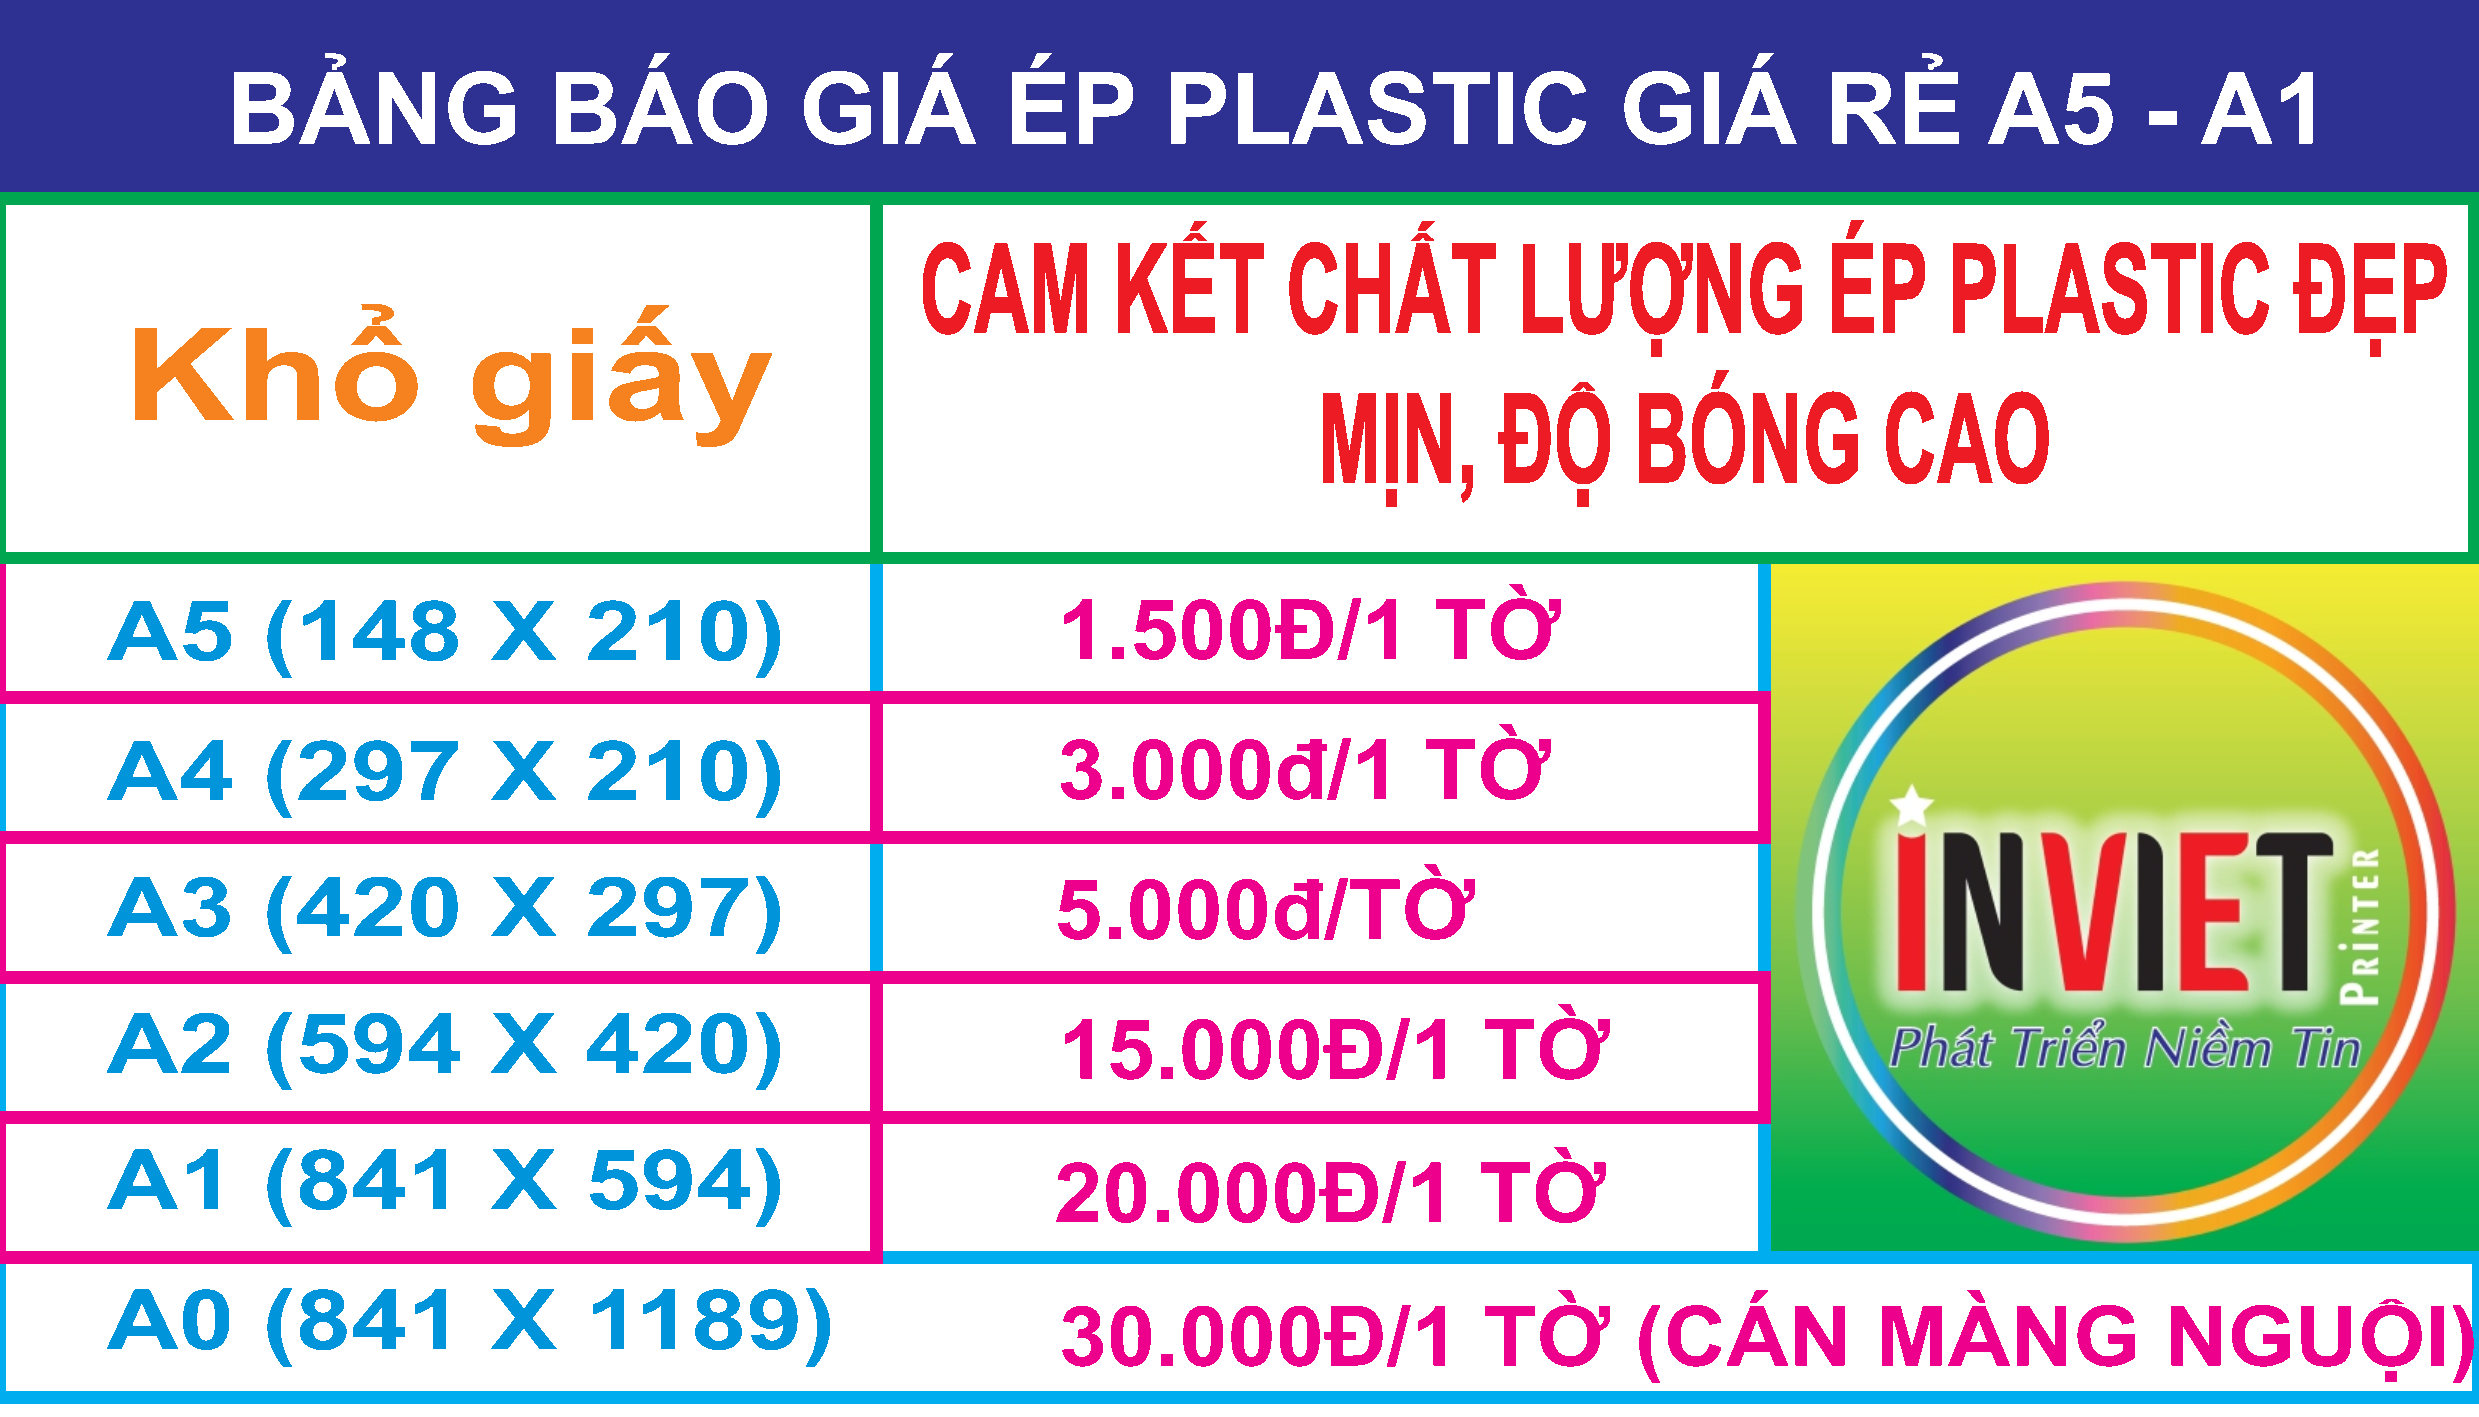 Dịch vụ Ép Plastic đẹp, Bảng báo giá ép plastic giá rẻ tại Hà Nội